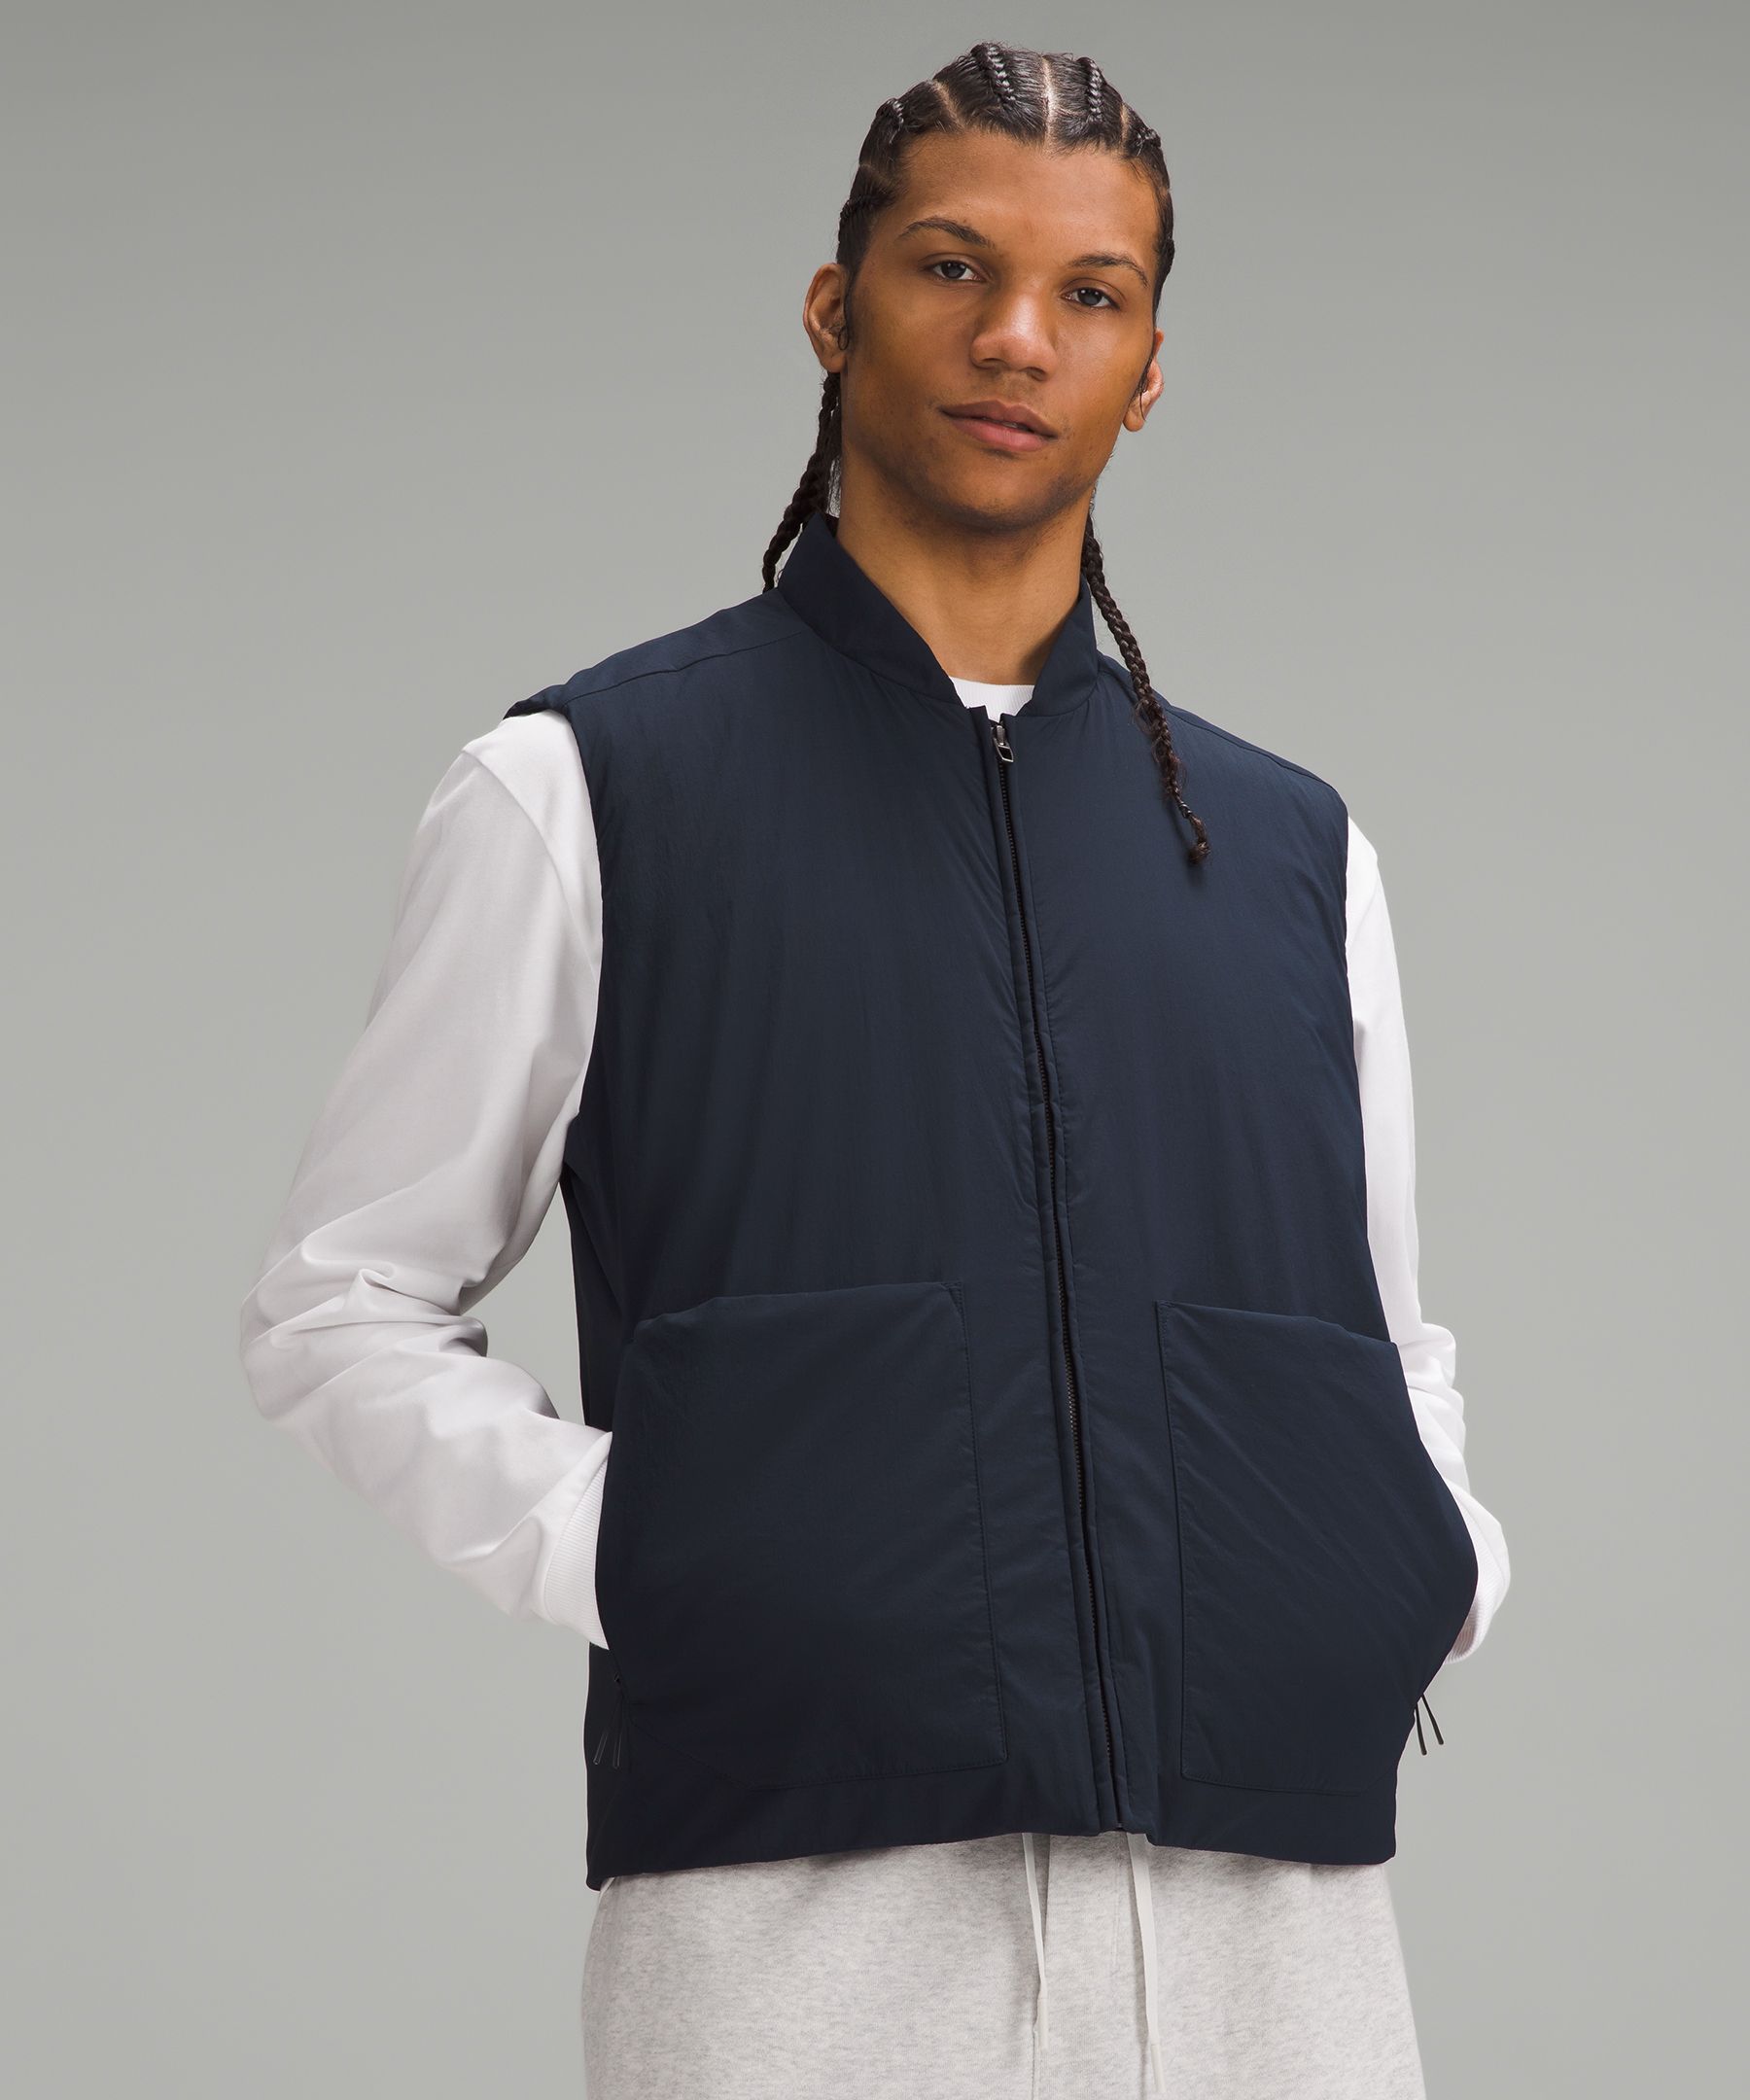 lululemon Men's Water-Repellent Fleece Jacket, Golf Equipment: Clubs,  Balls, Bags